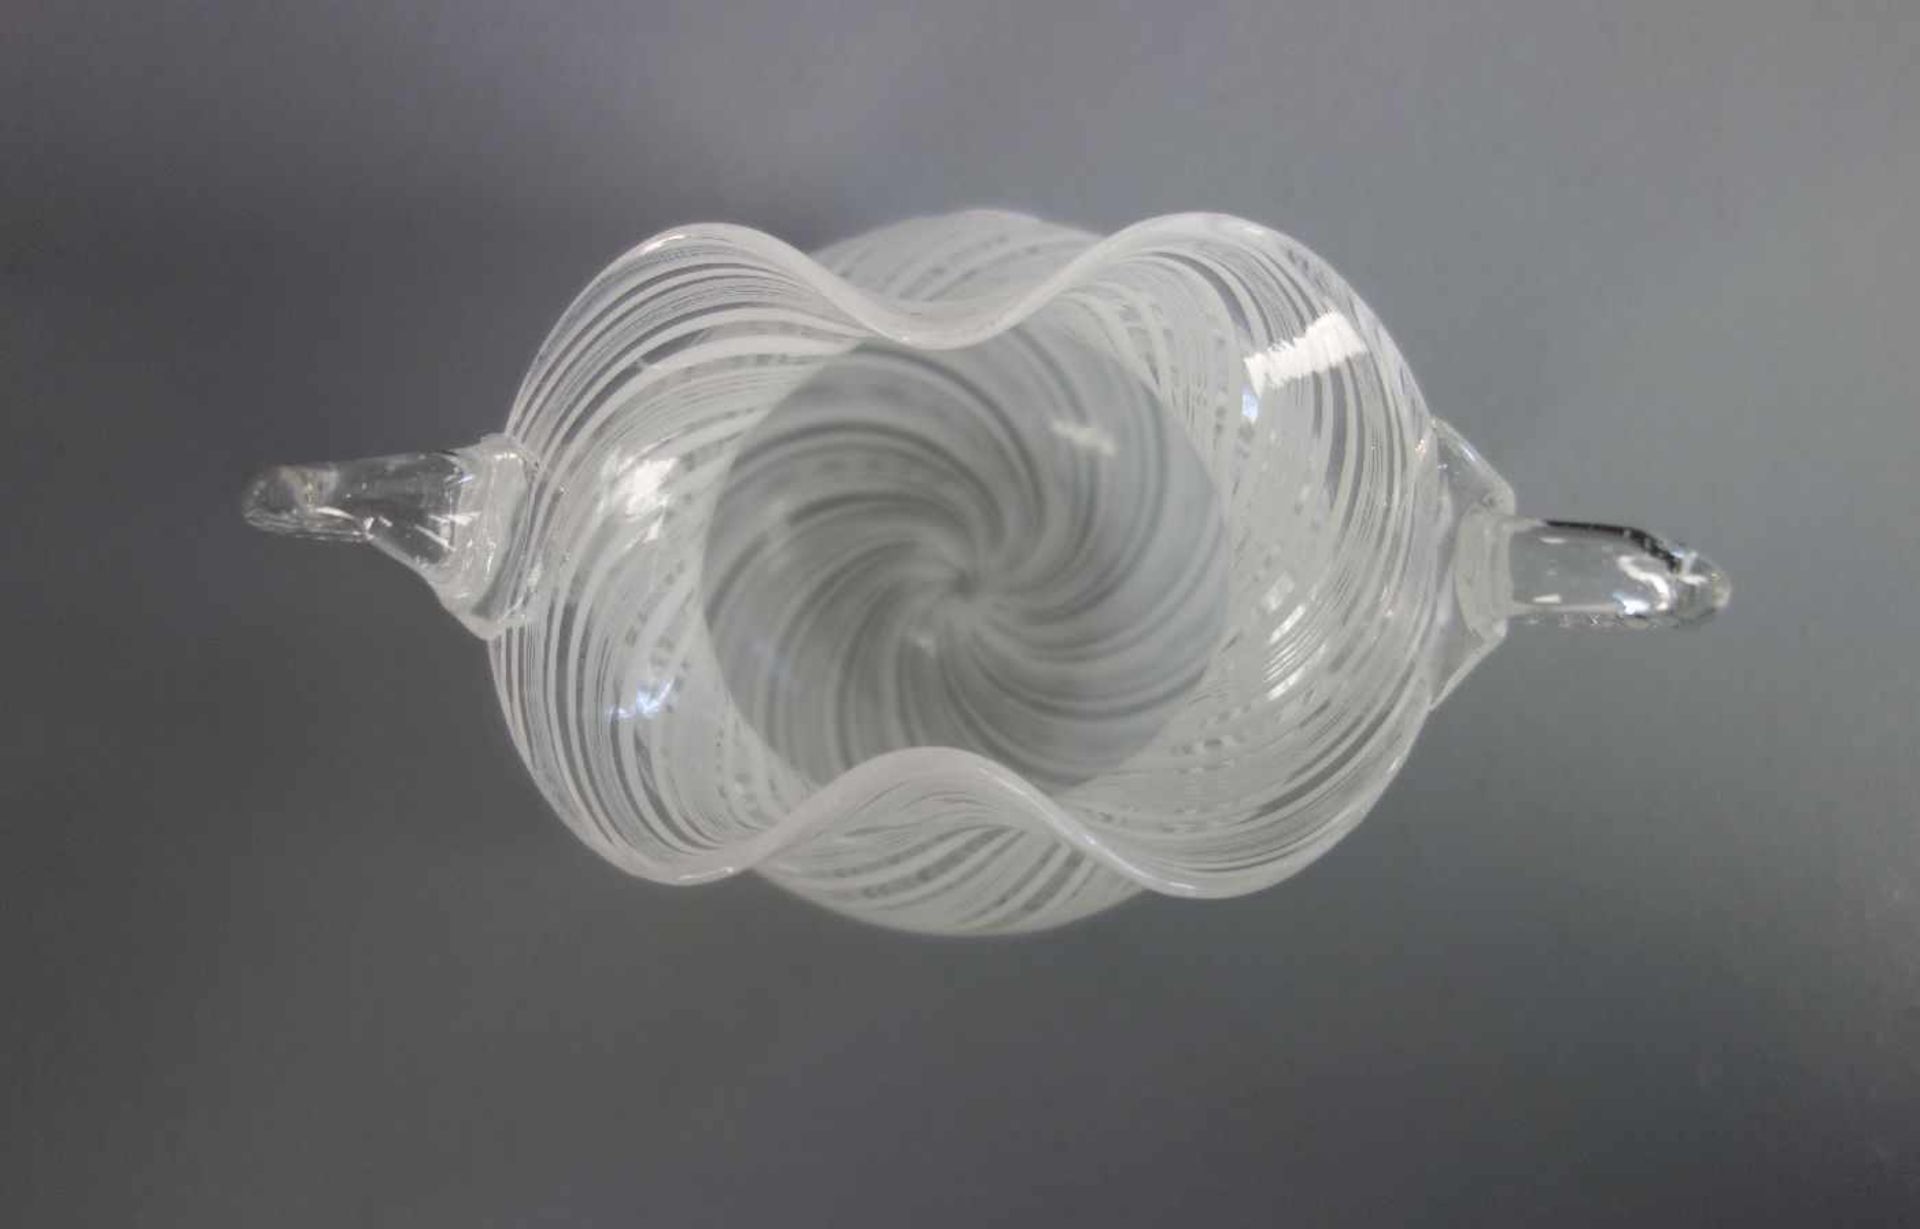 VASE / SCHALE, Klarglas mit eingekämmten weißen Fäden. Gebauchte Form mit unterem Abriss, - Image 3 of 3